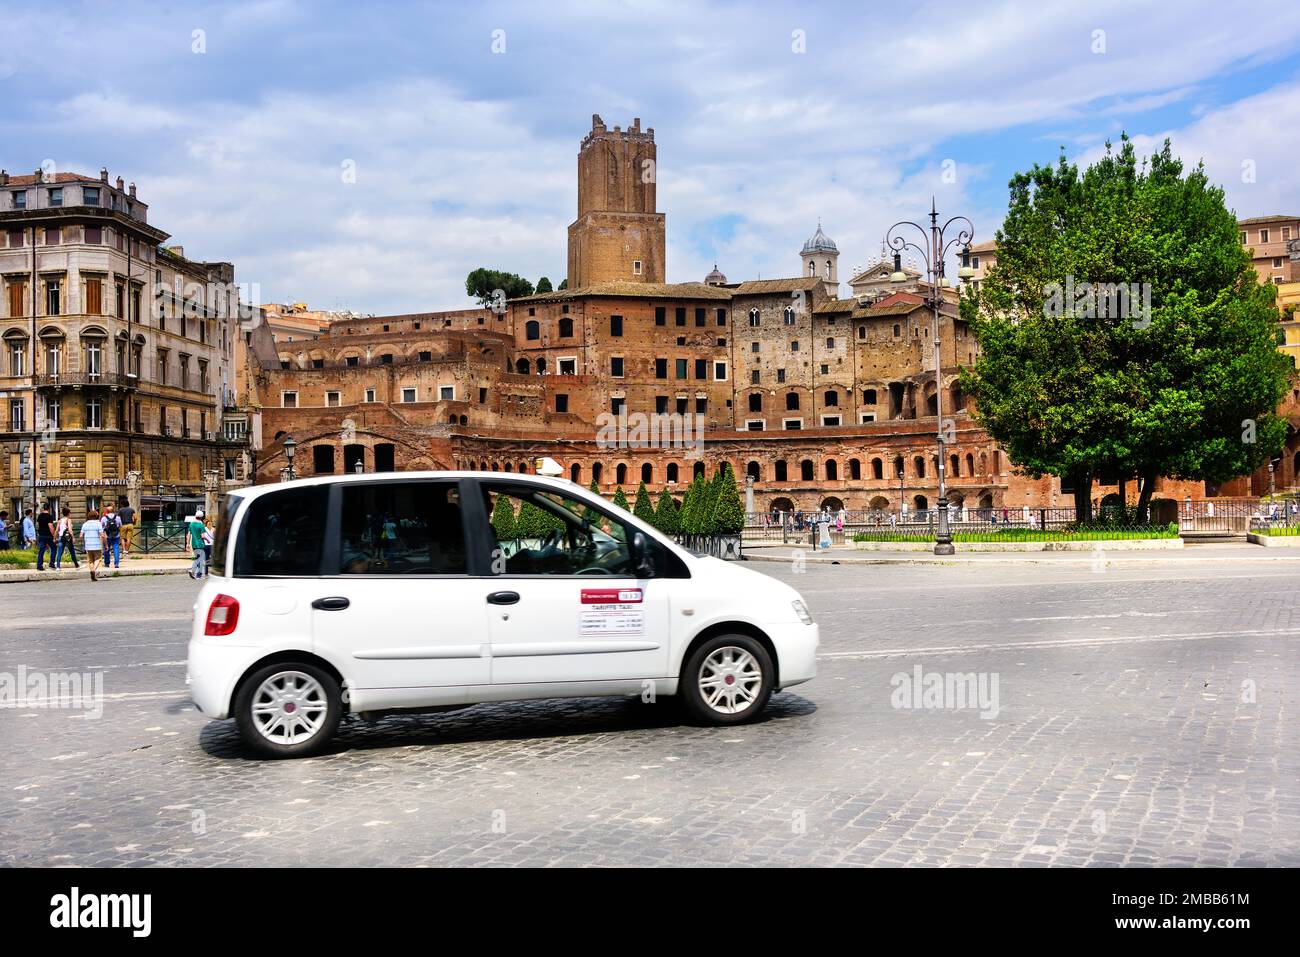 Rom, Italien - 10. Juni 2016: Taxifahrer auf einer belebten Straße mit Fußgängern und mit antiker römischer Architektur gesäumt. Stockfoto